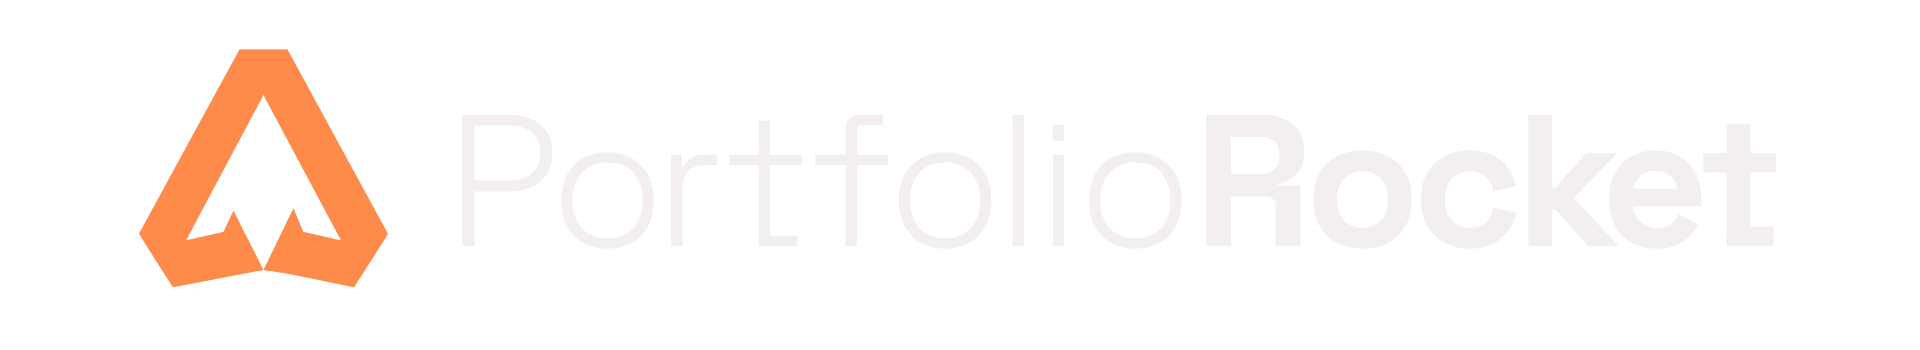 PortfolioRocket Logo